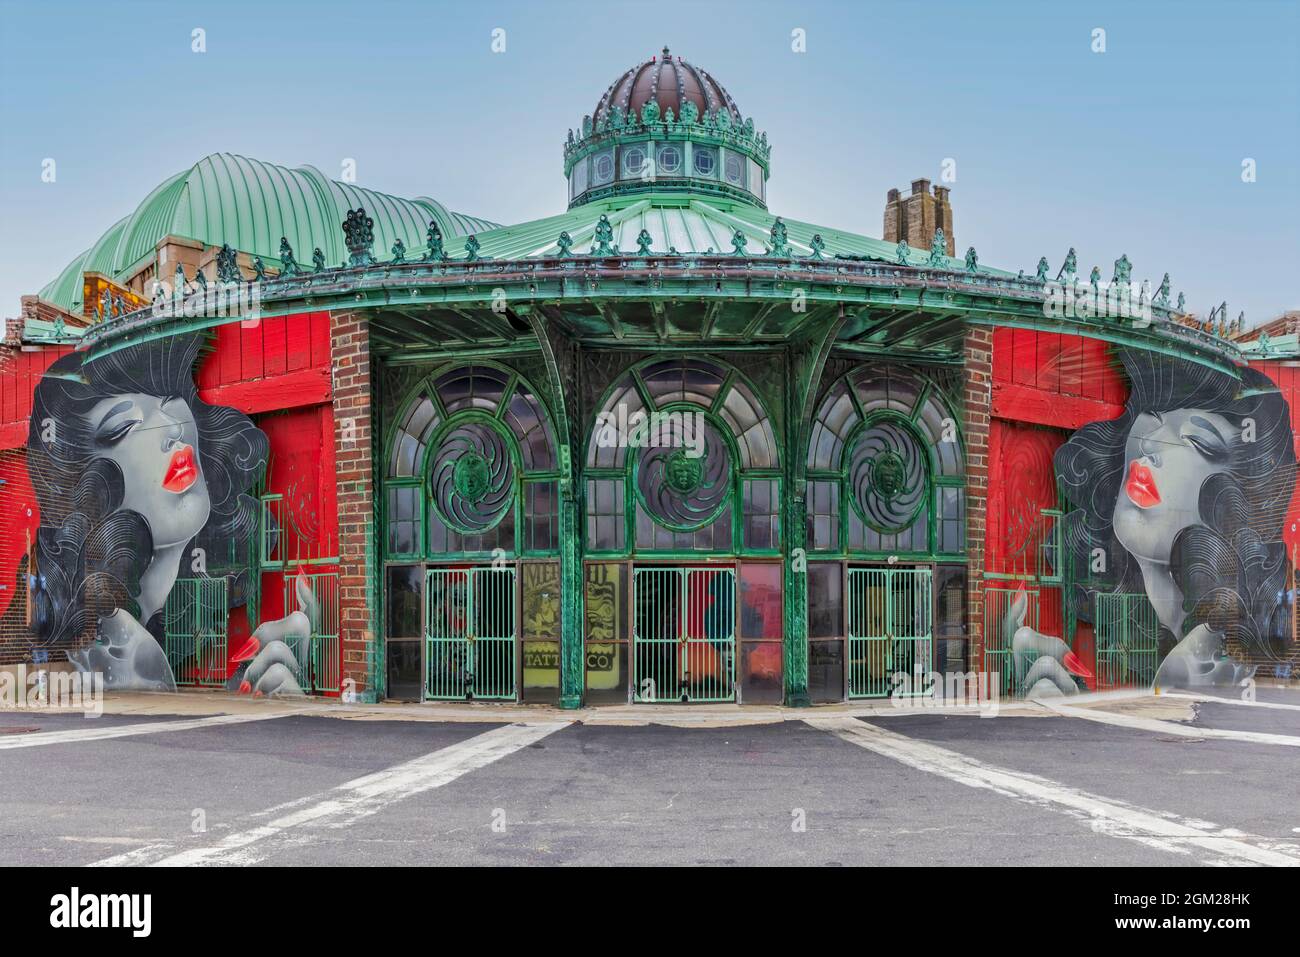 Asbury Park Carousel - Blick auf das historische Carousel House im Asbury Park. Dieses Bild ist sowohl in Farbe als auch in Schwarzweiß verfügbar. Weitere anzeigen Stockfoto